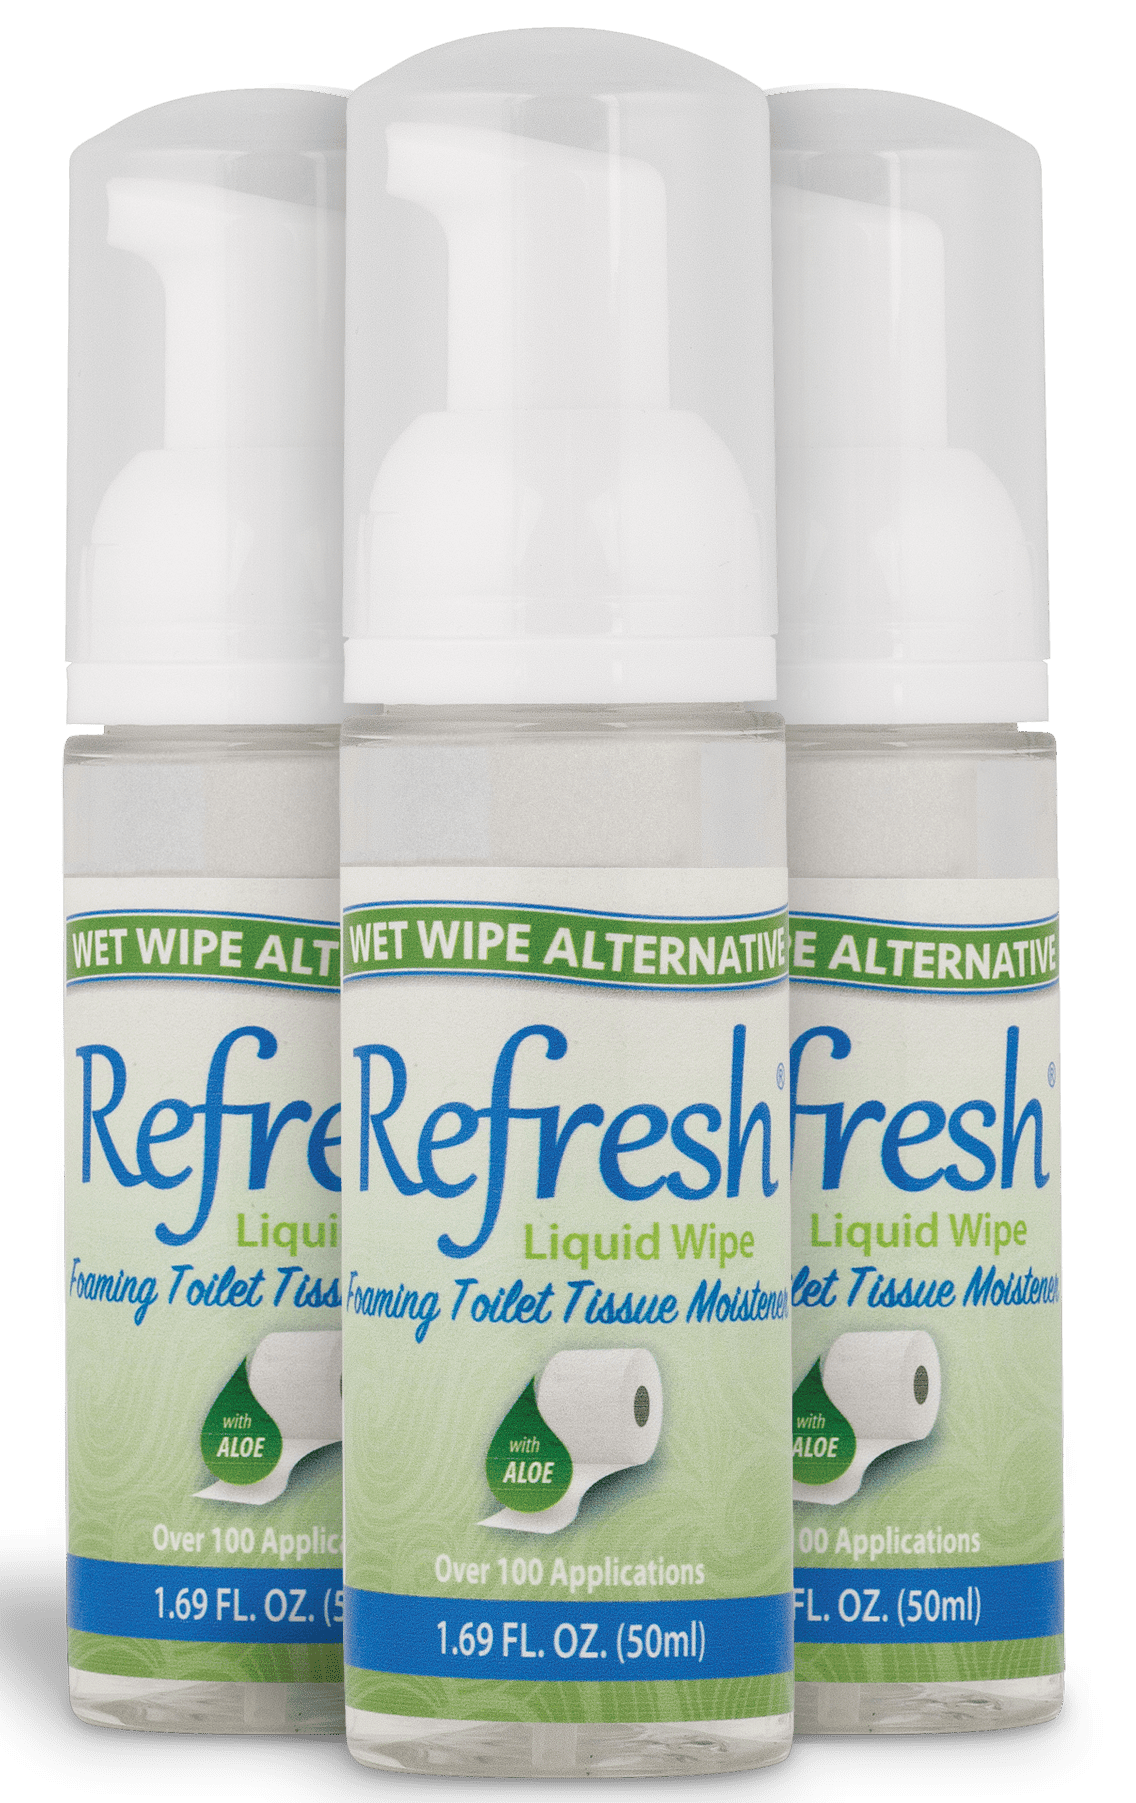 Refill Bottle - Qleanse Toilet Paper Foam Spray Refill